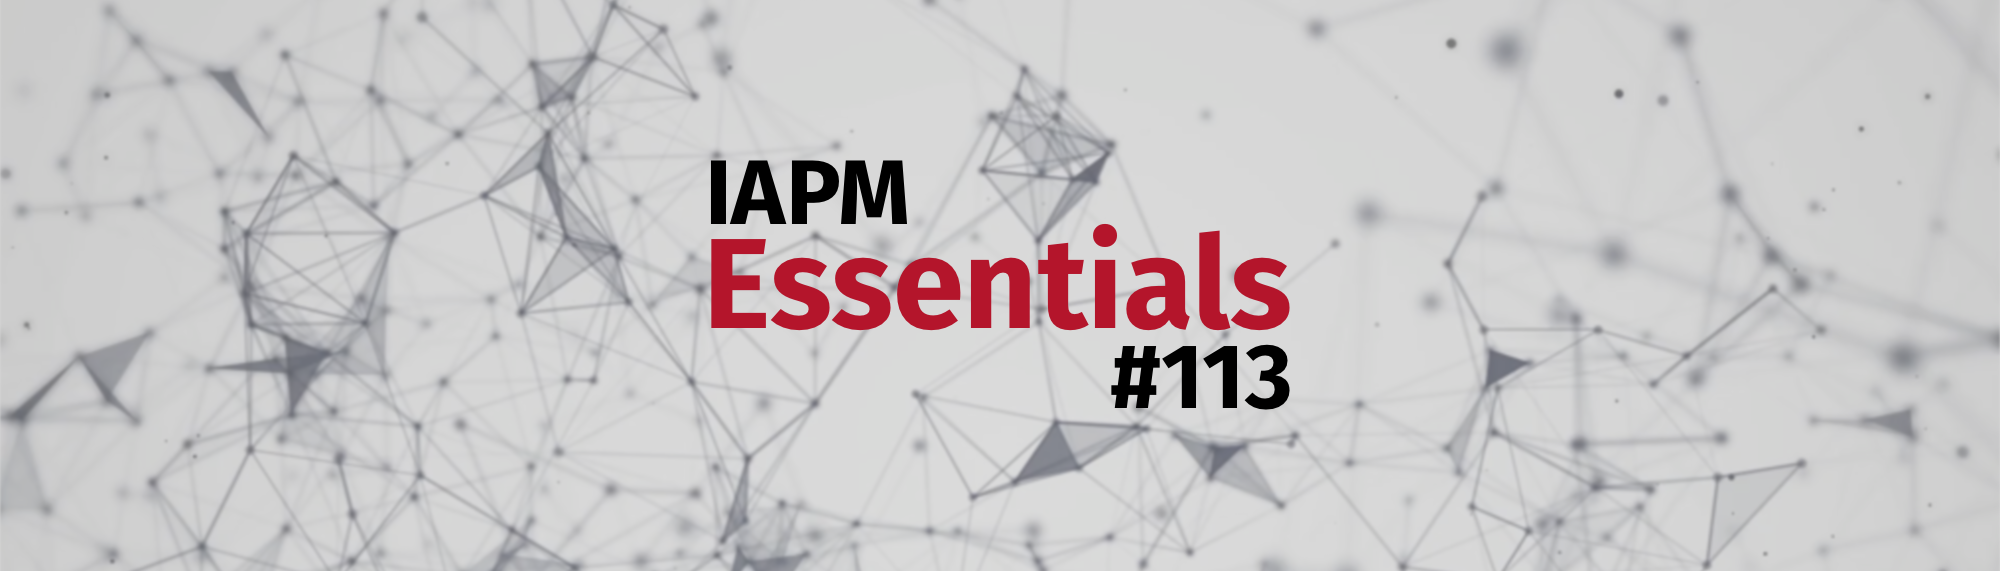 IAPM Essentials #113 - PM news | IAPM